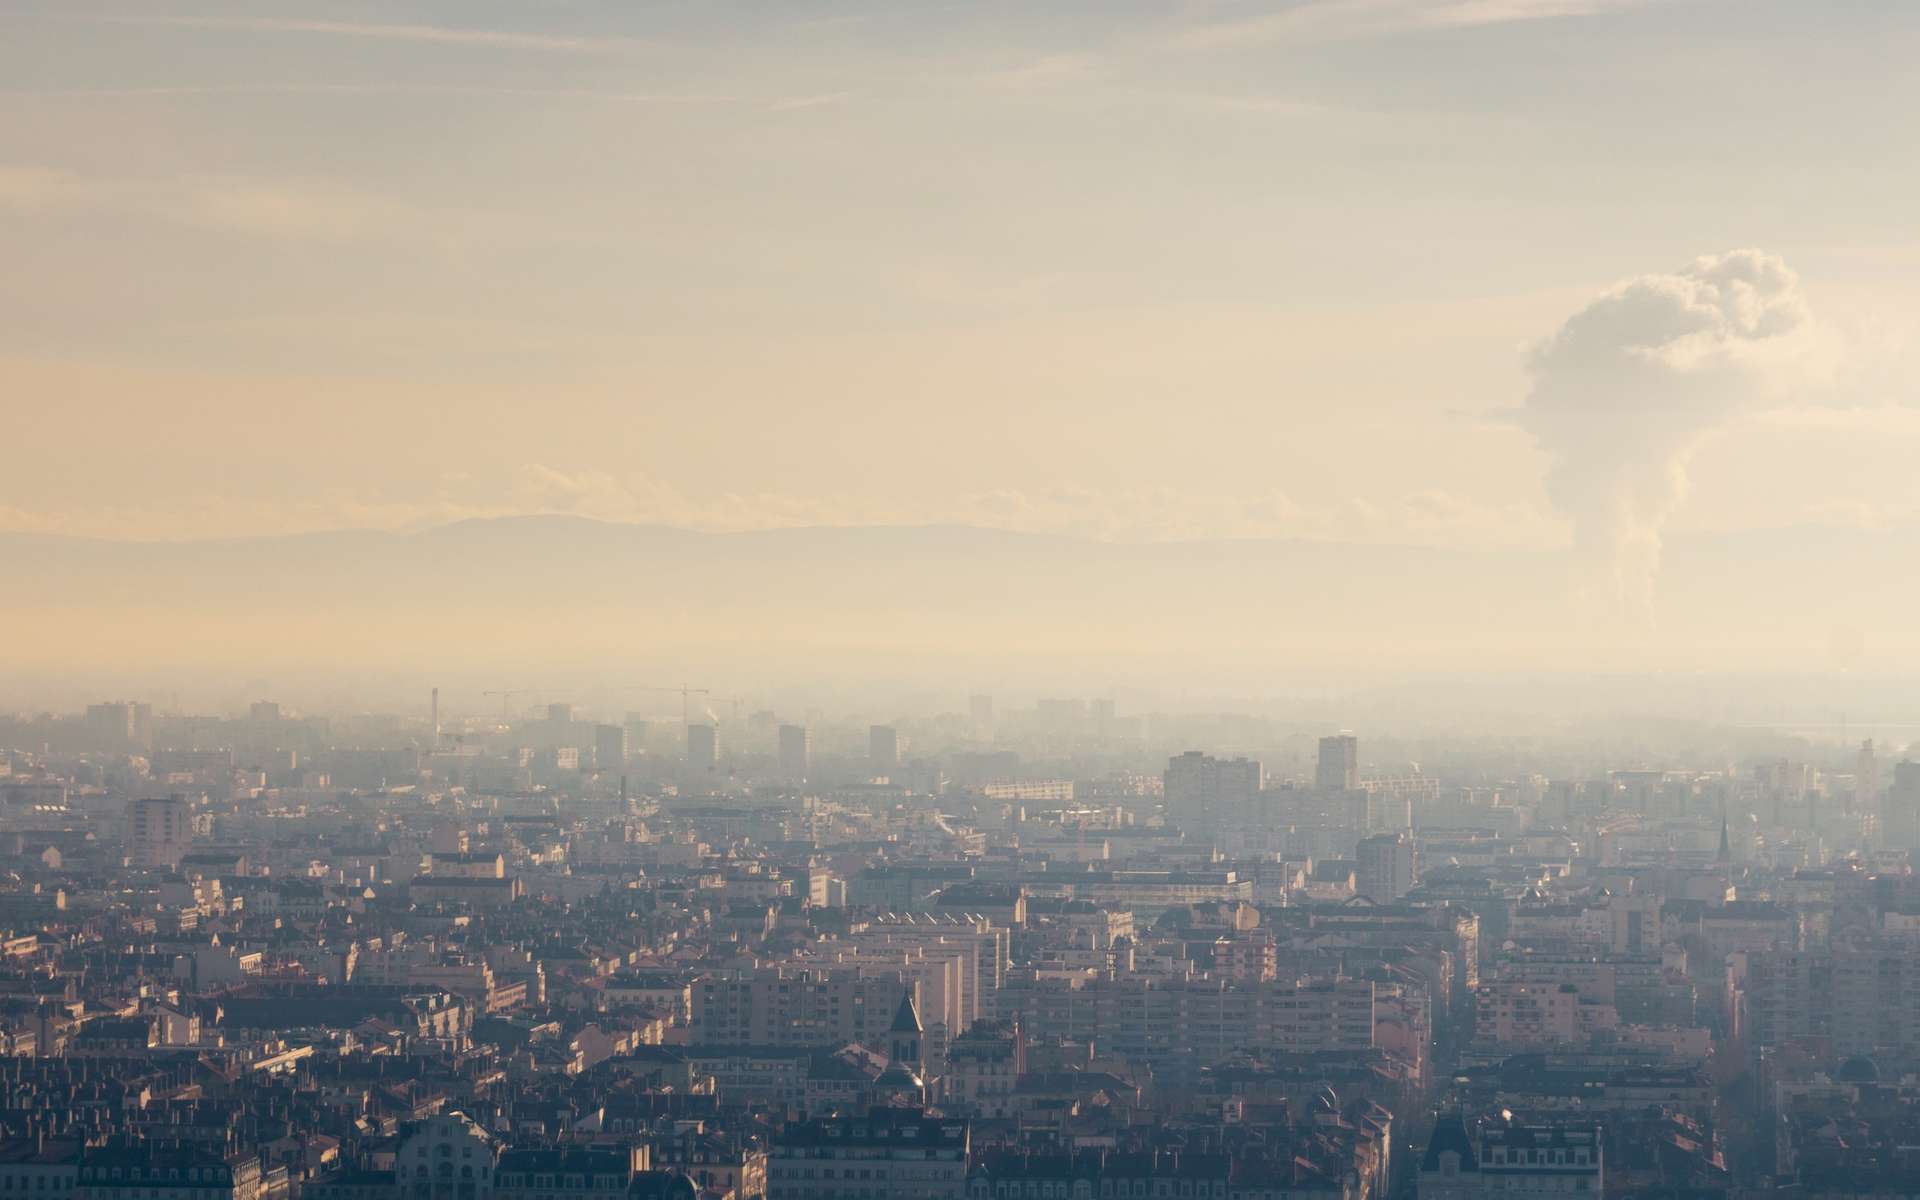 Le quatrième rapport du Haut Conseil pour le Climat (HCC) appelle à « dépasser les constats pour mettre en œuvre les solutions ». Nuage de pollution au dessus de Lyon un jour de canicule. © jef 77, Adobe Stock